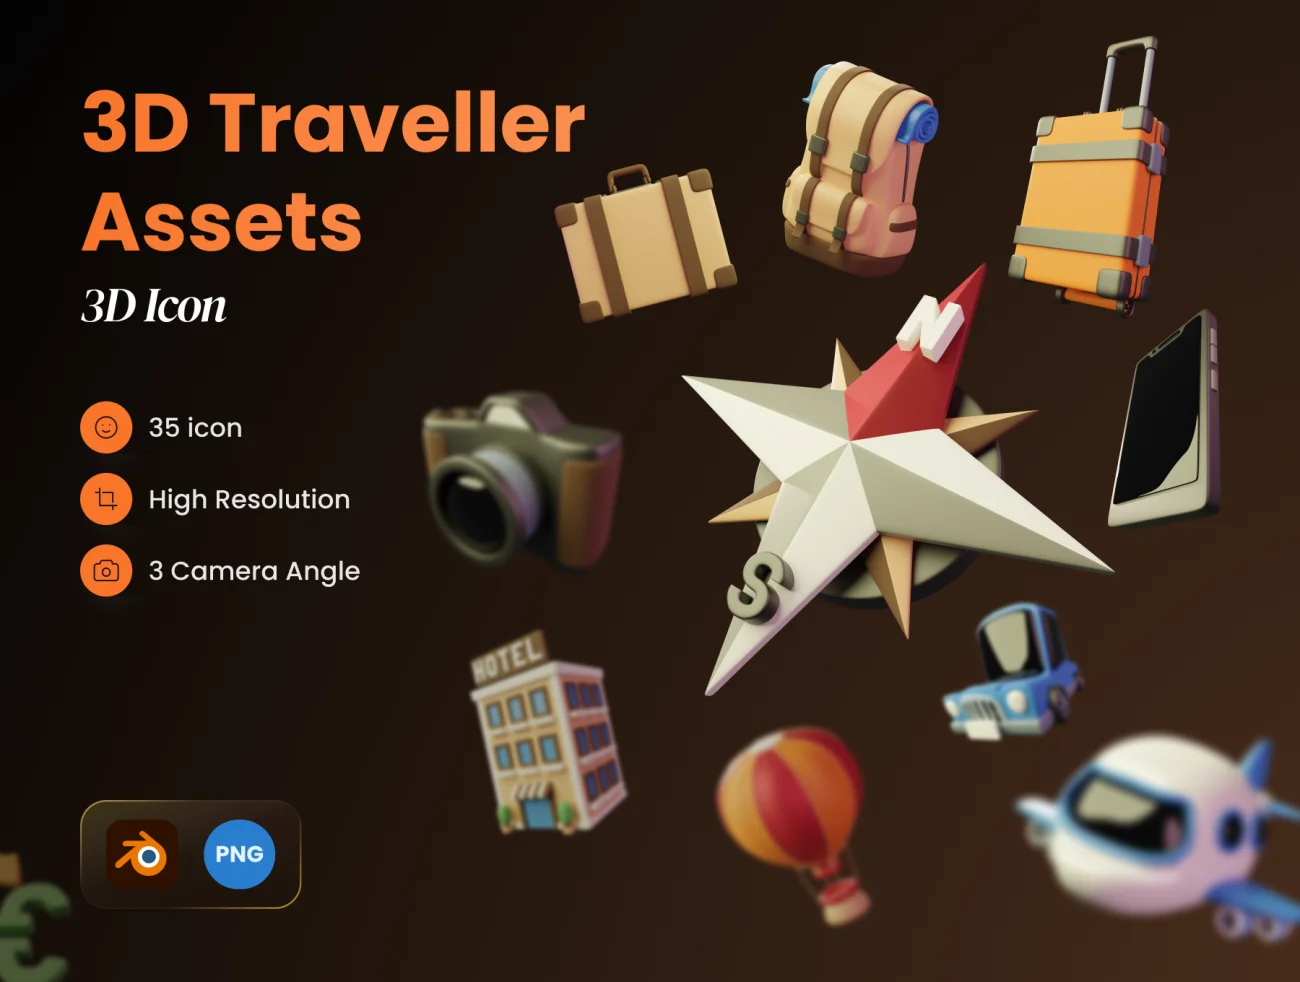 35款旅行3D模型图标素材 3D Traveller Assets .blender .psd .figma插图1